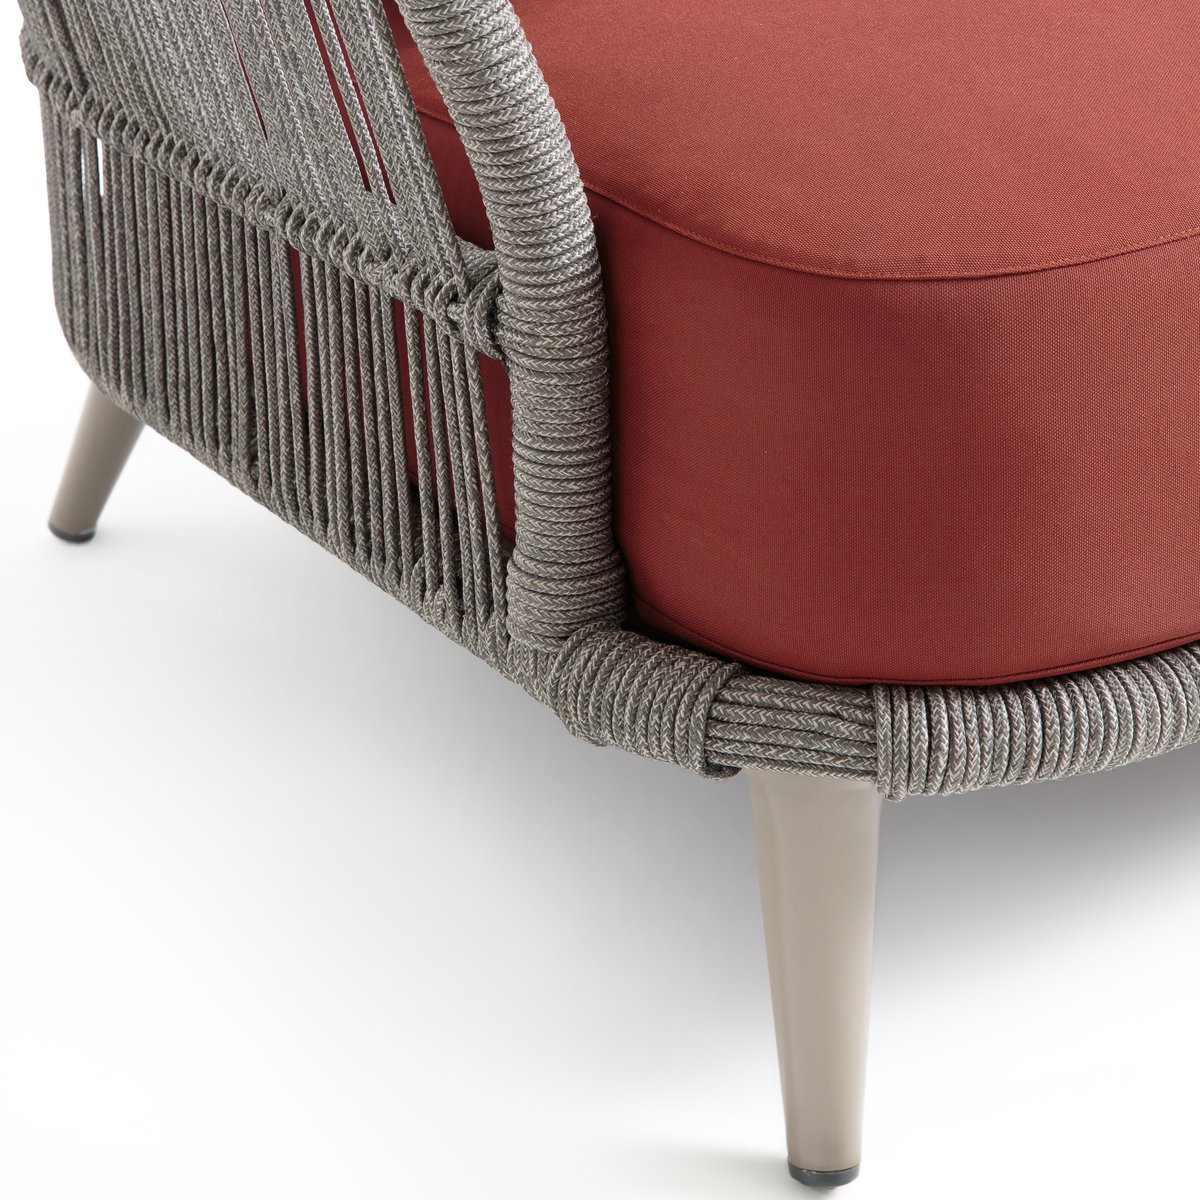 Кресло La Redoute Для сада дизайн Э Галлины Cestino единый размер каштановый - фото 5